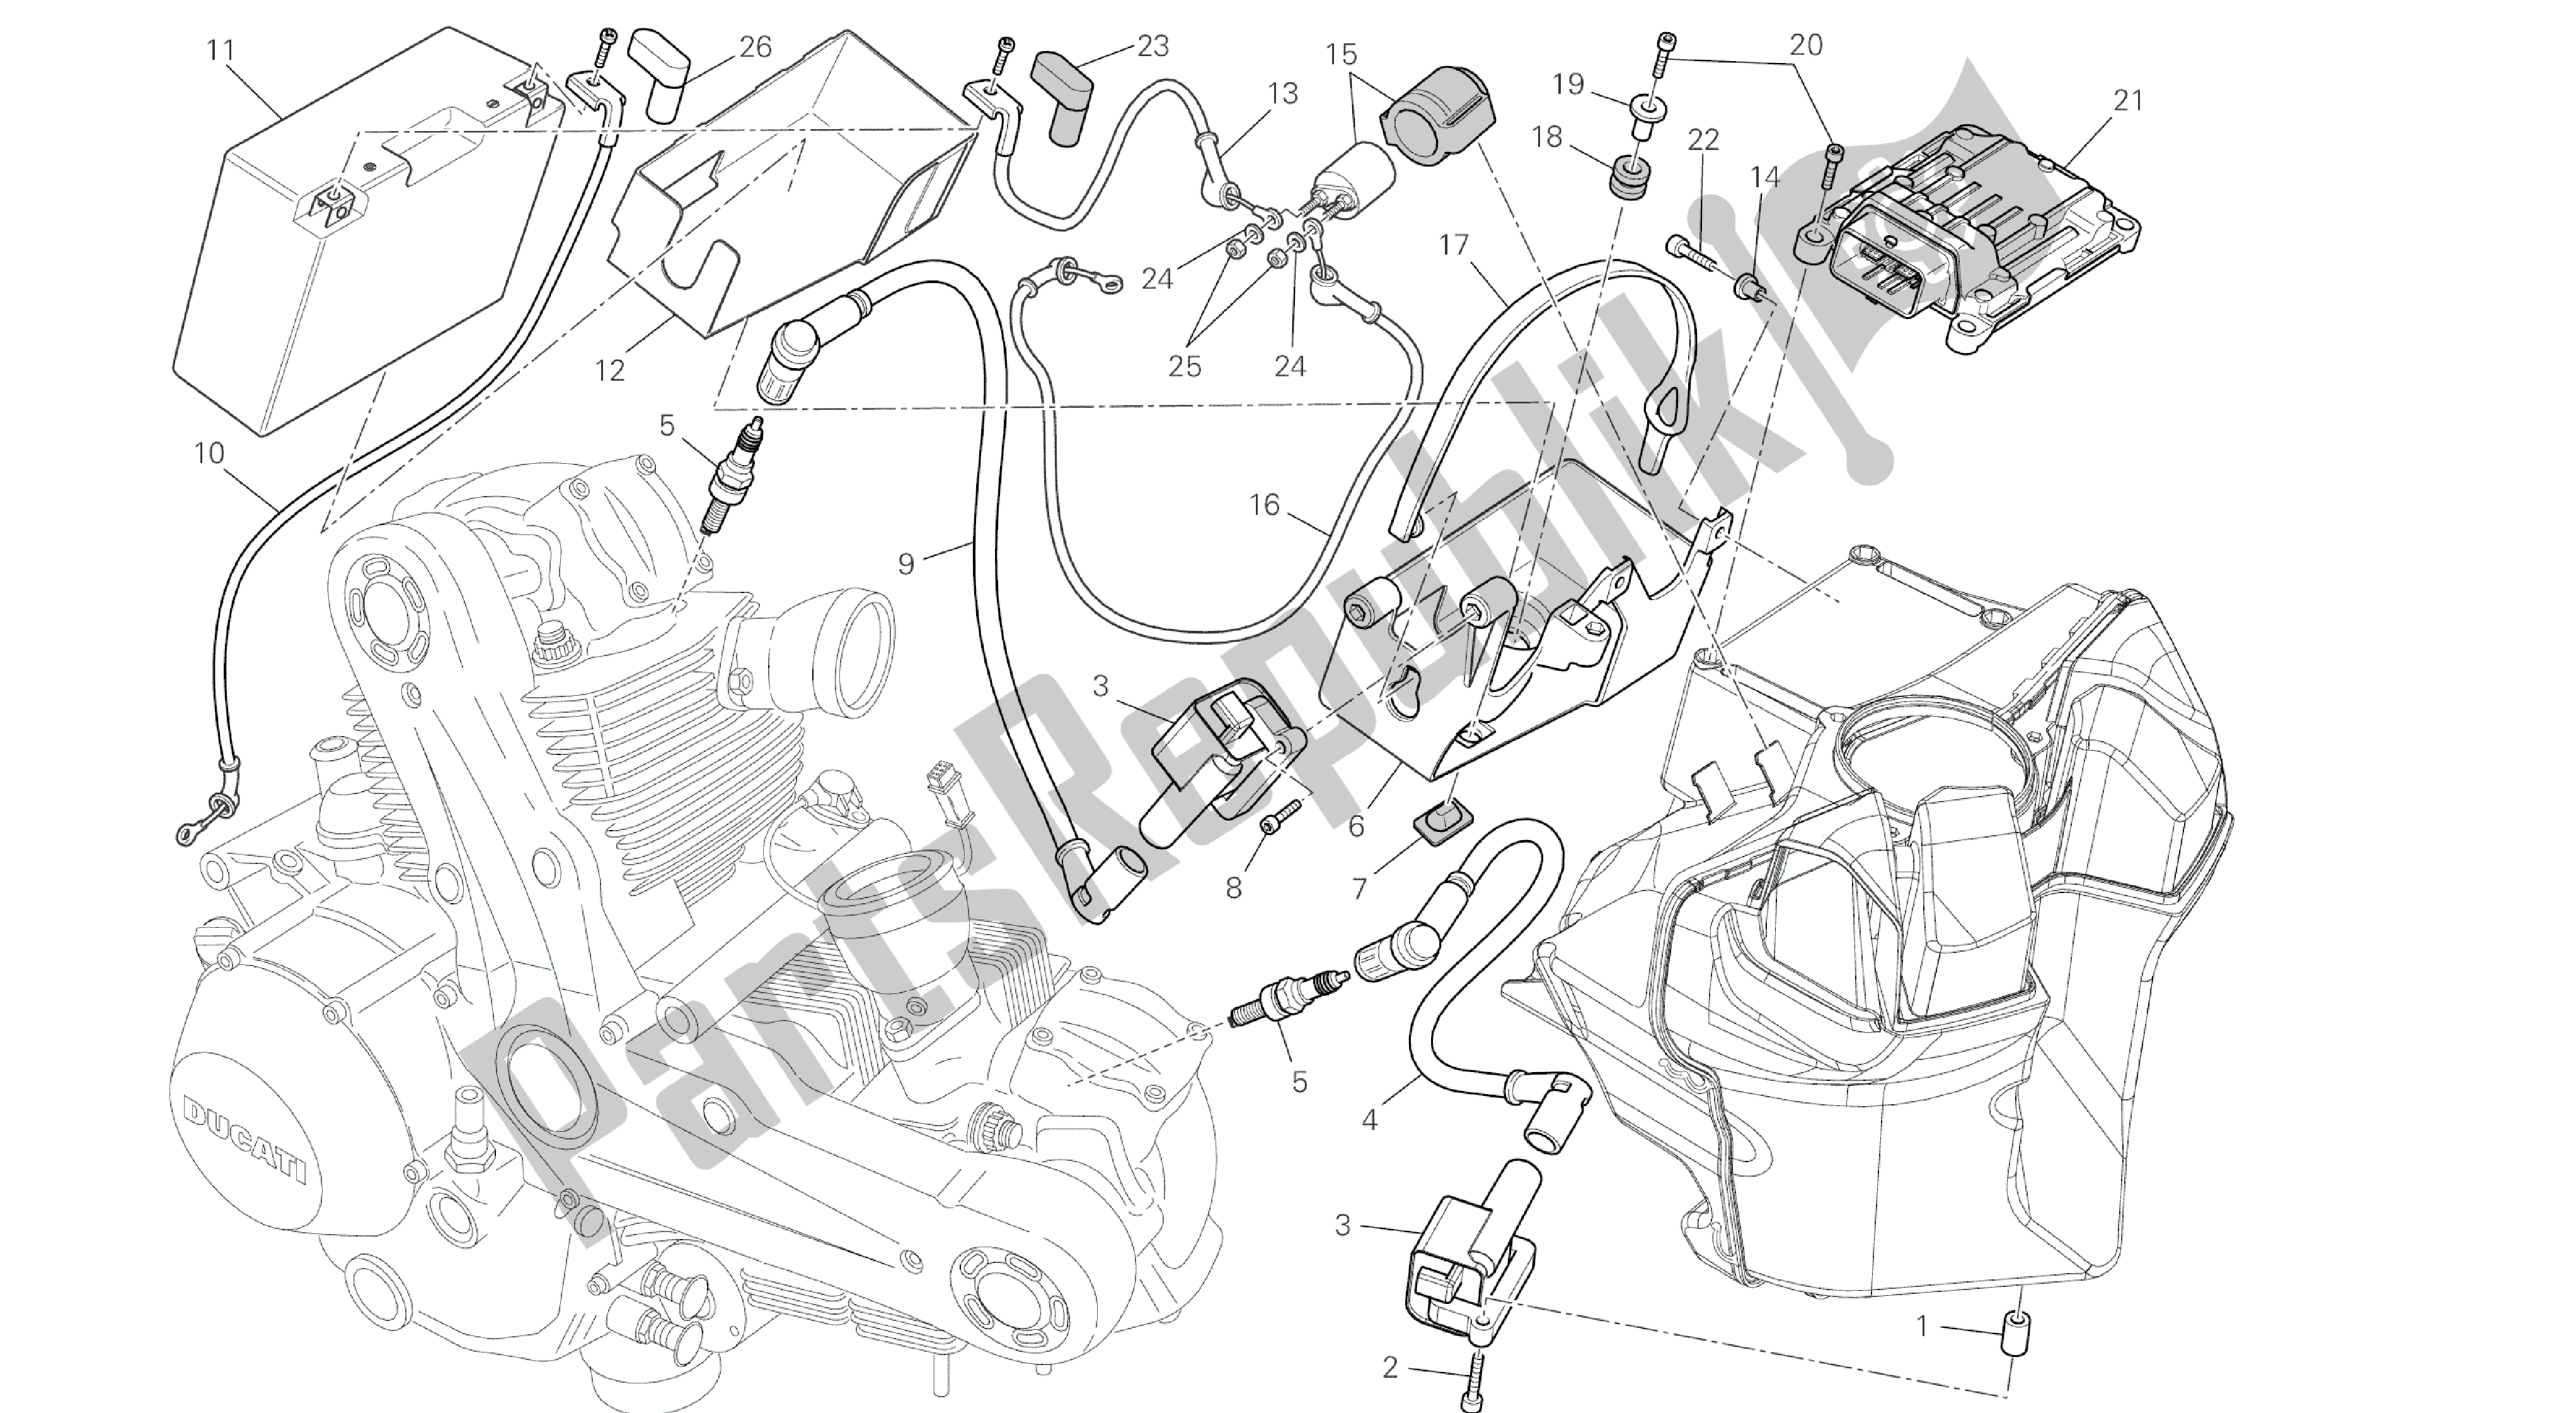 Tutte le parti per il Disegno 019 - Batteria [mod: M796 Abs; Xst: Aus, Bra, Eur, Jap, Twn] Gruppo Elettrico del Ducati Monster ABS 796 2014